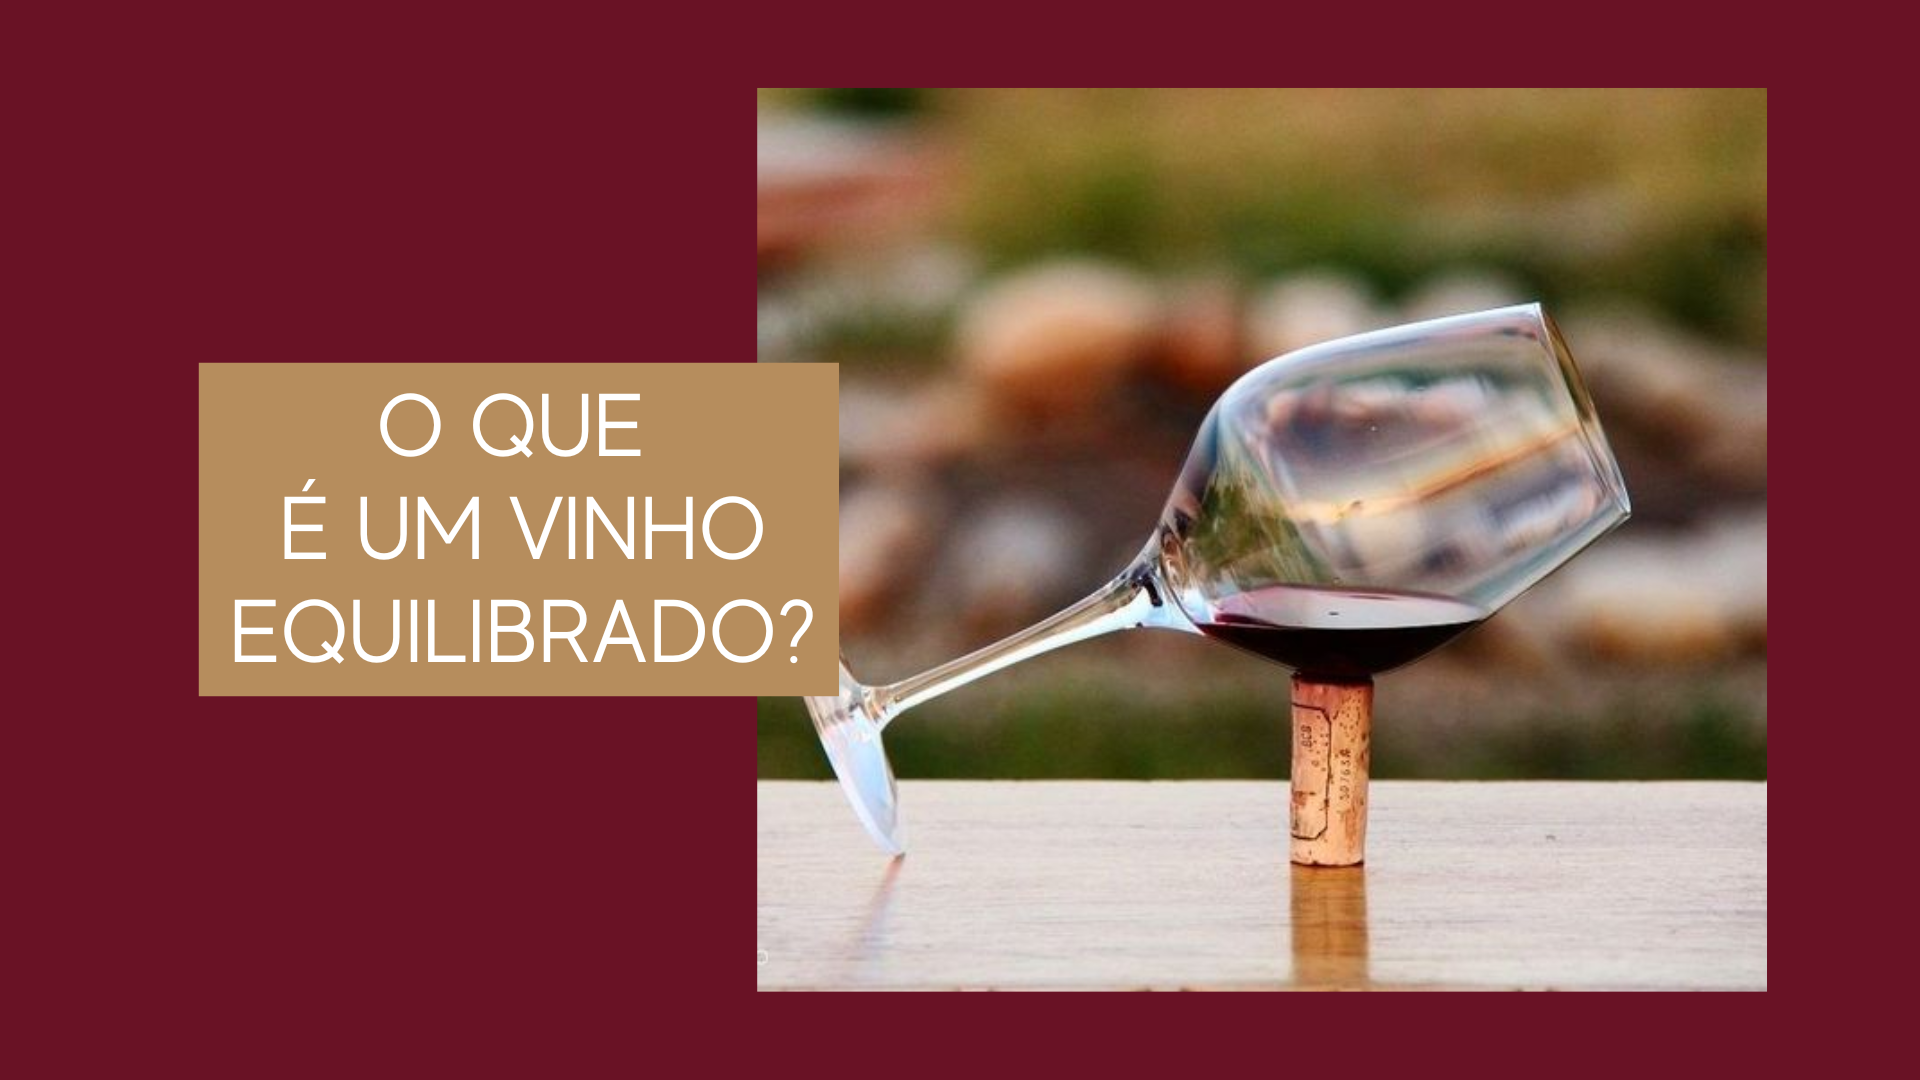 O que é um vinho equilibrado?